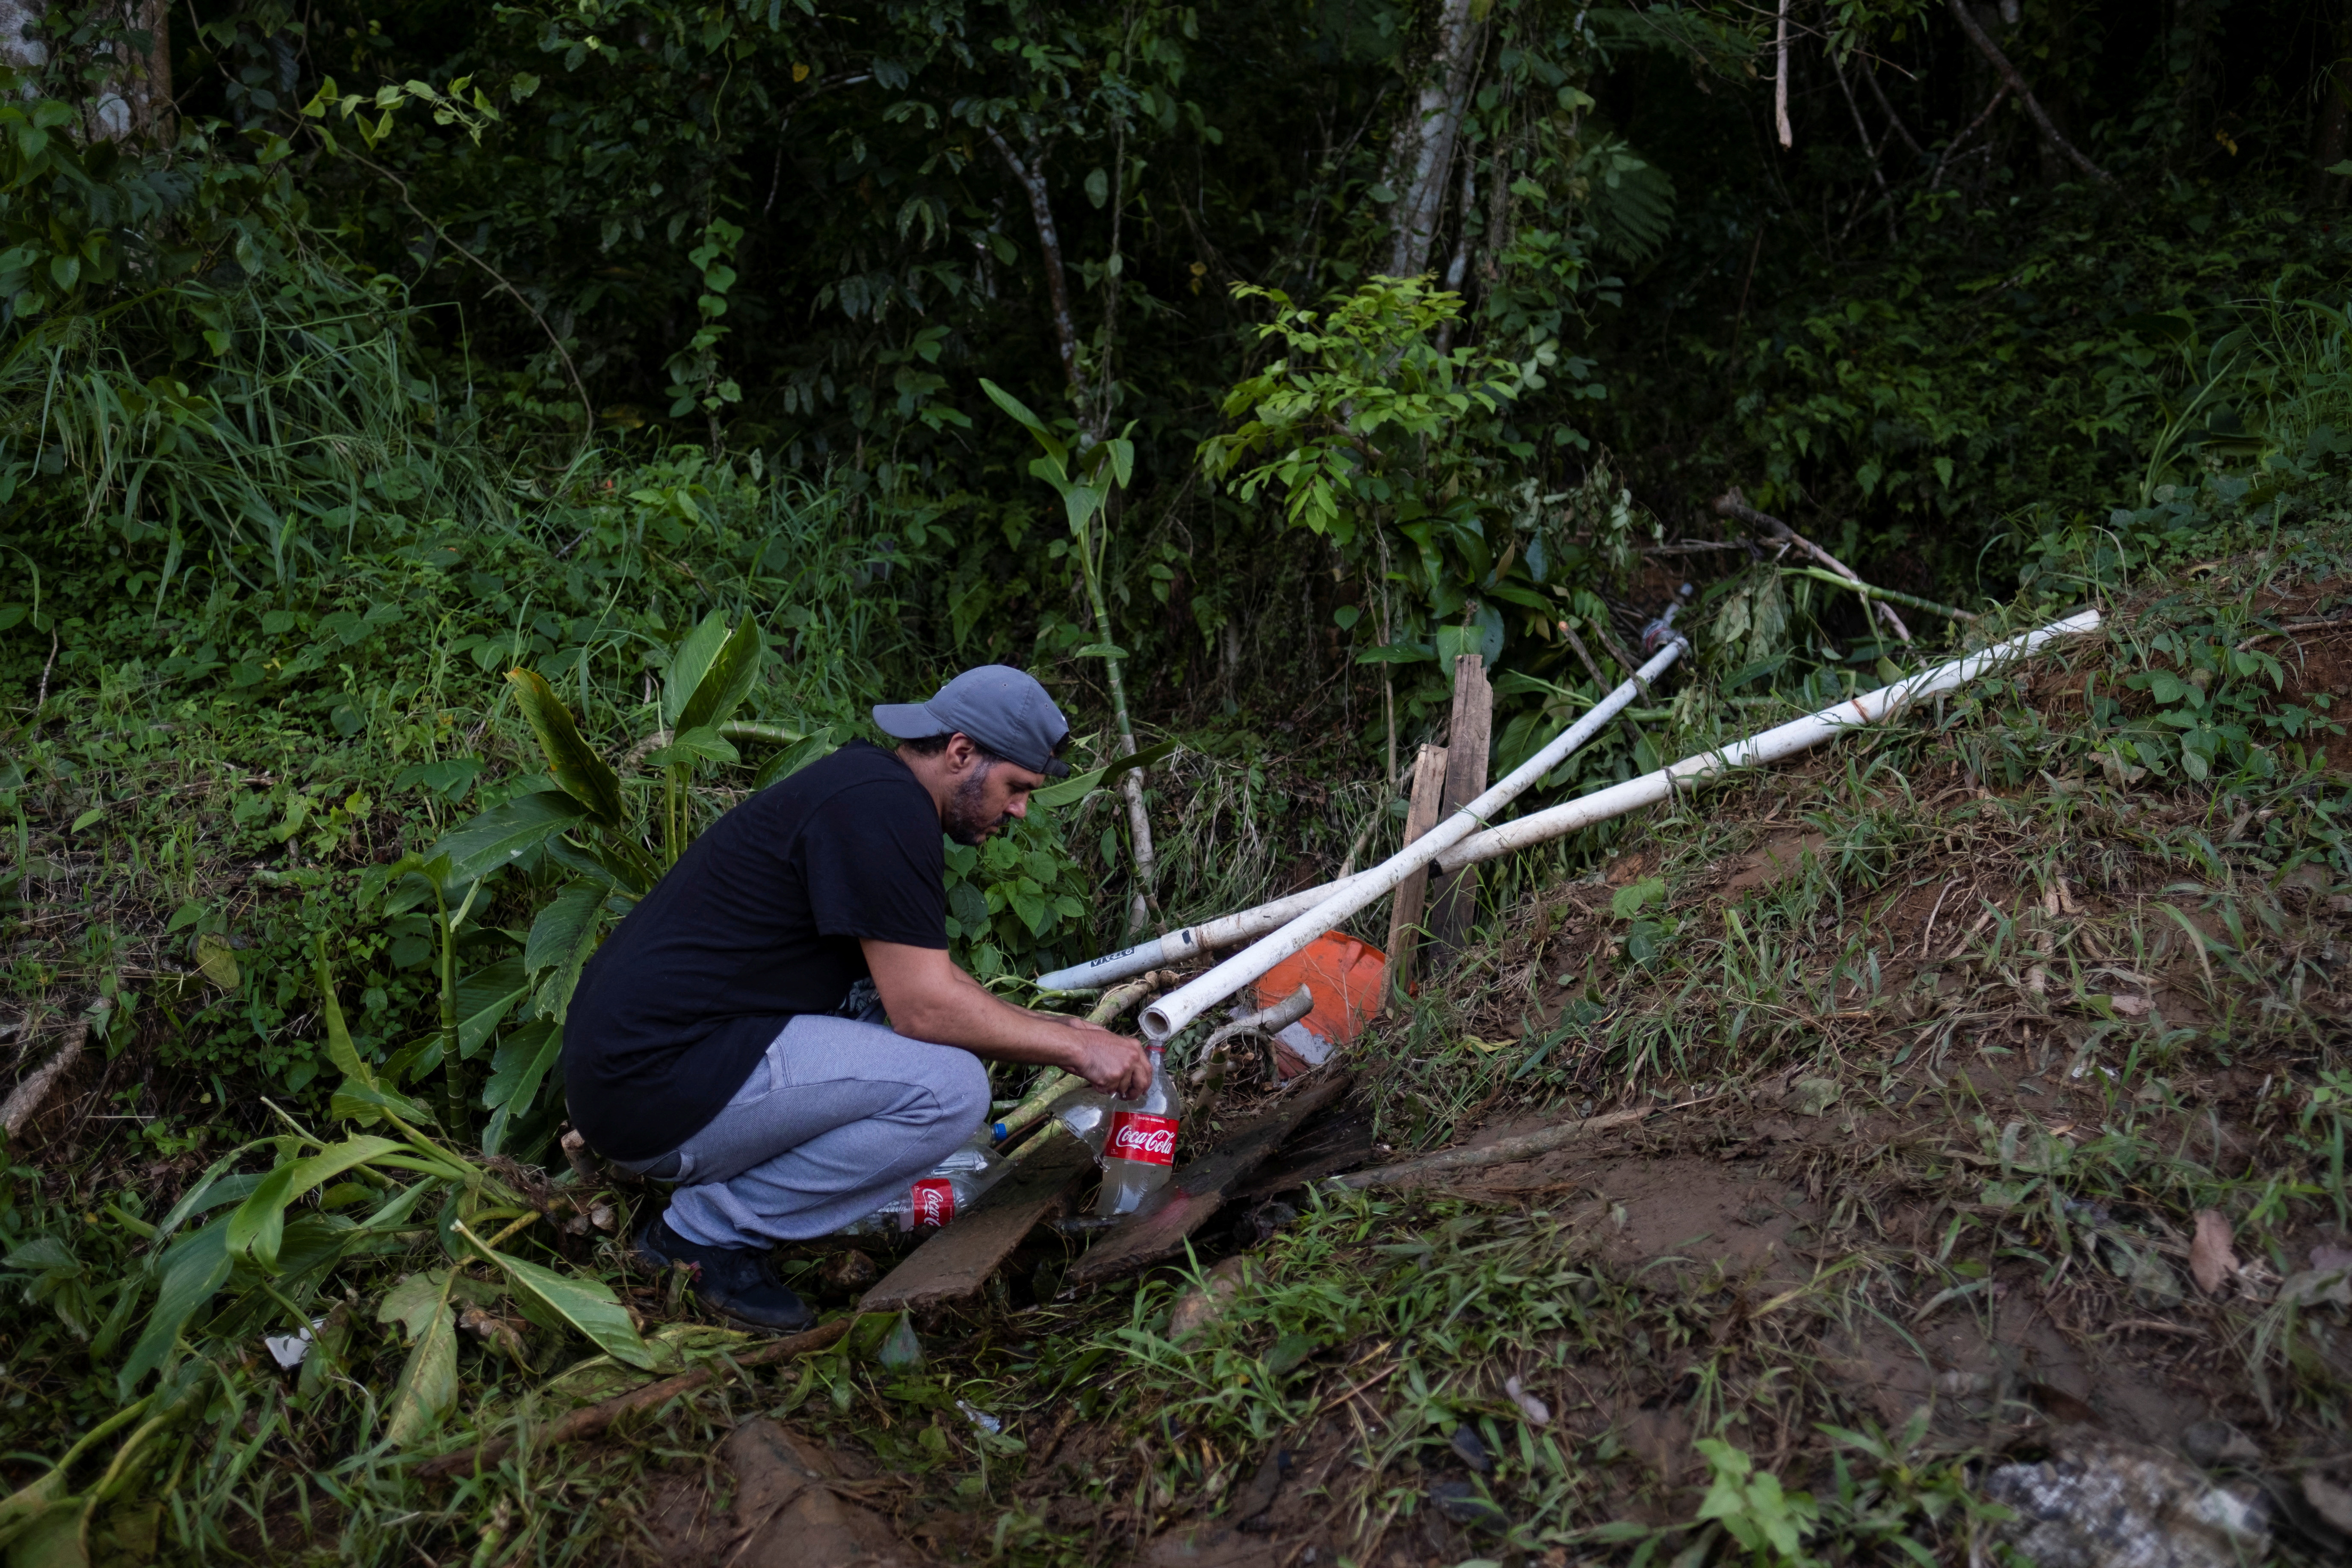 Las personas intentaron abastecerse de agua con los medios que encontraron REUTERS/Ricardo Arduengo